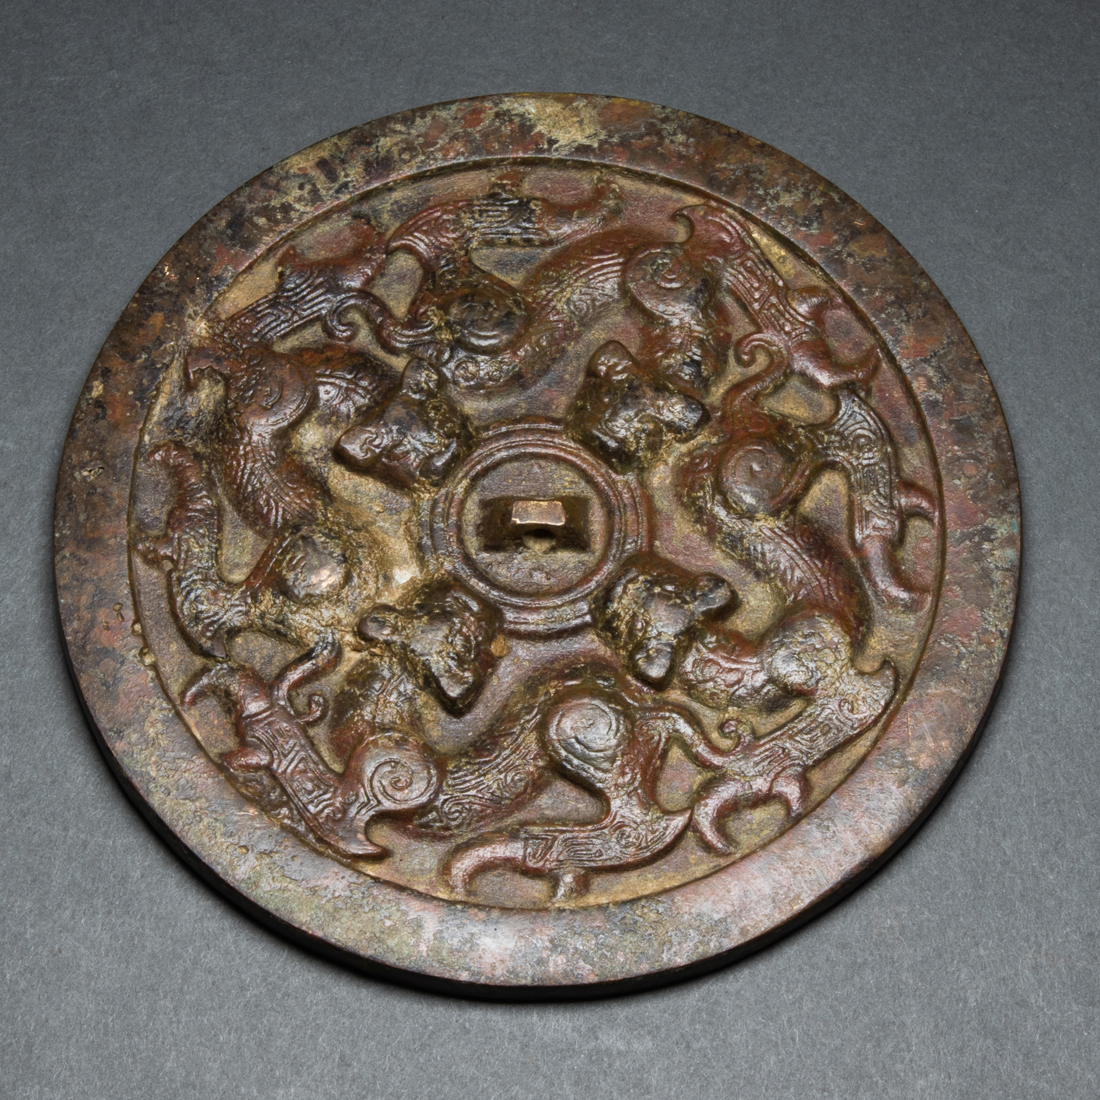 CHINESE BRONZE MIRROR Chinese bronze